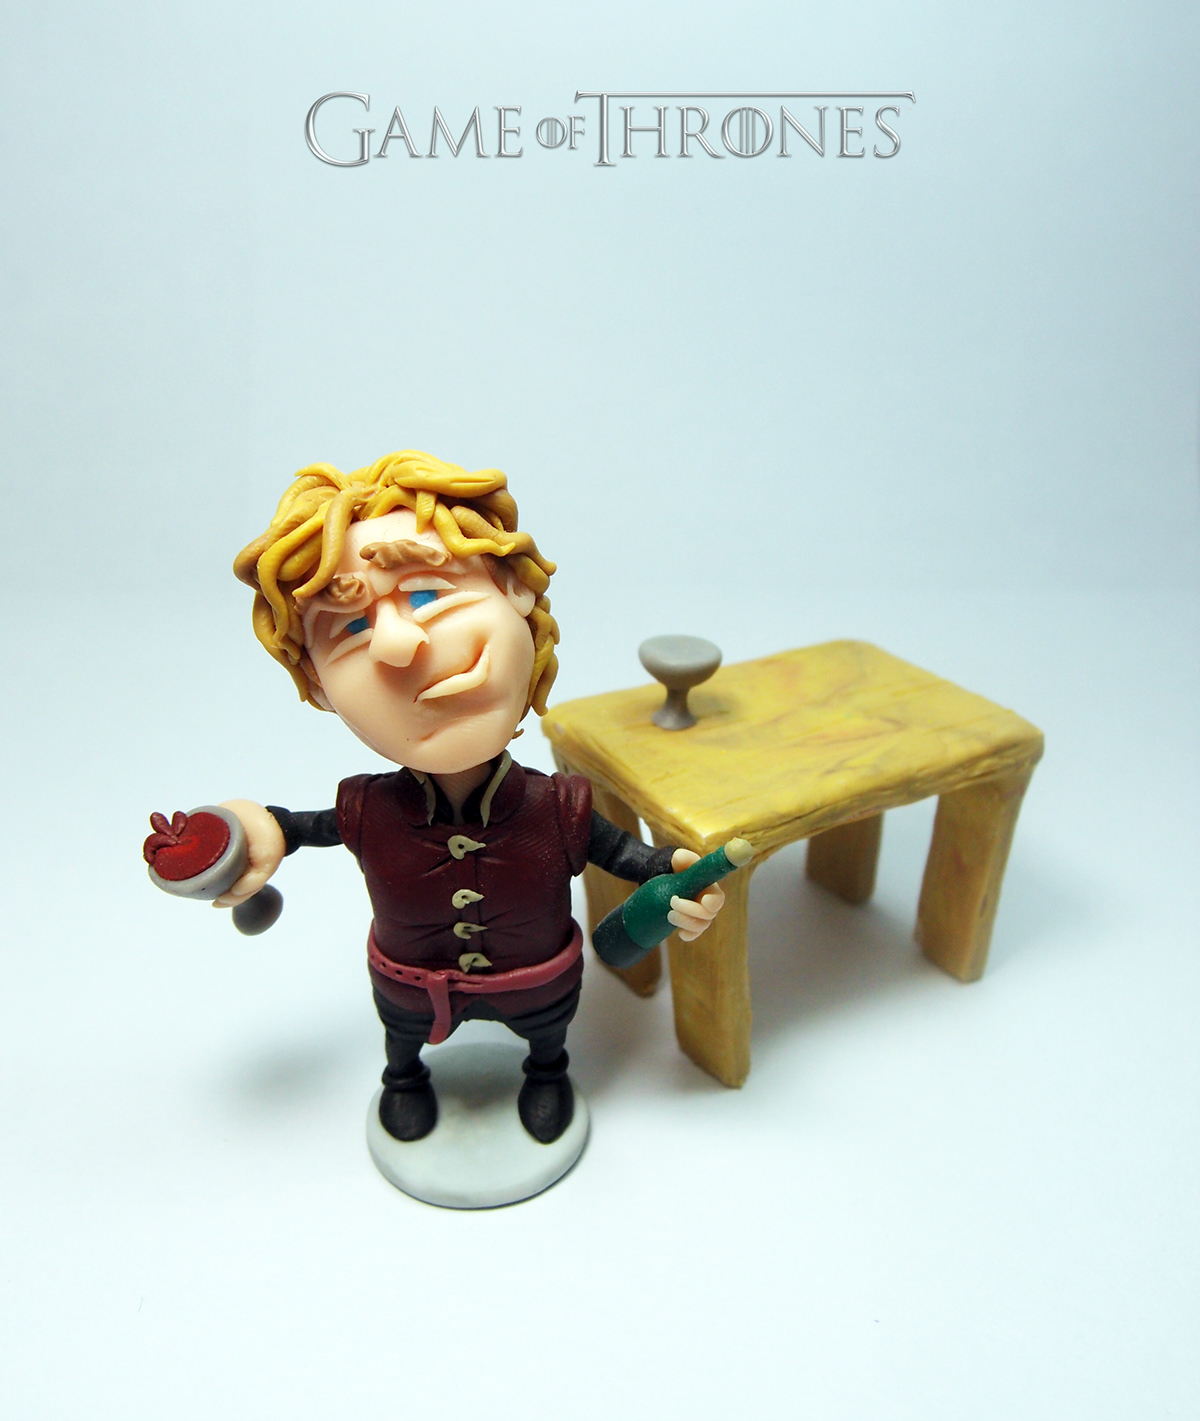 Game of Thrones juego de tronos juego de tronos Game of Thrones got got toys cartoon cool new designertoys artoys